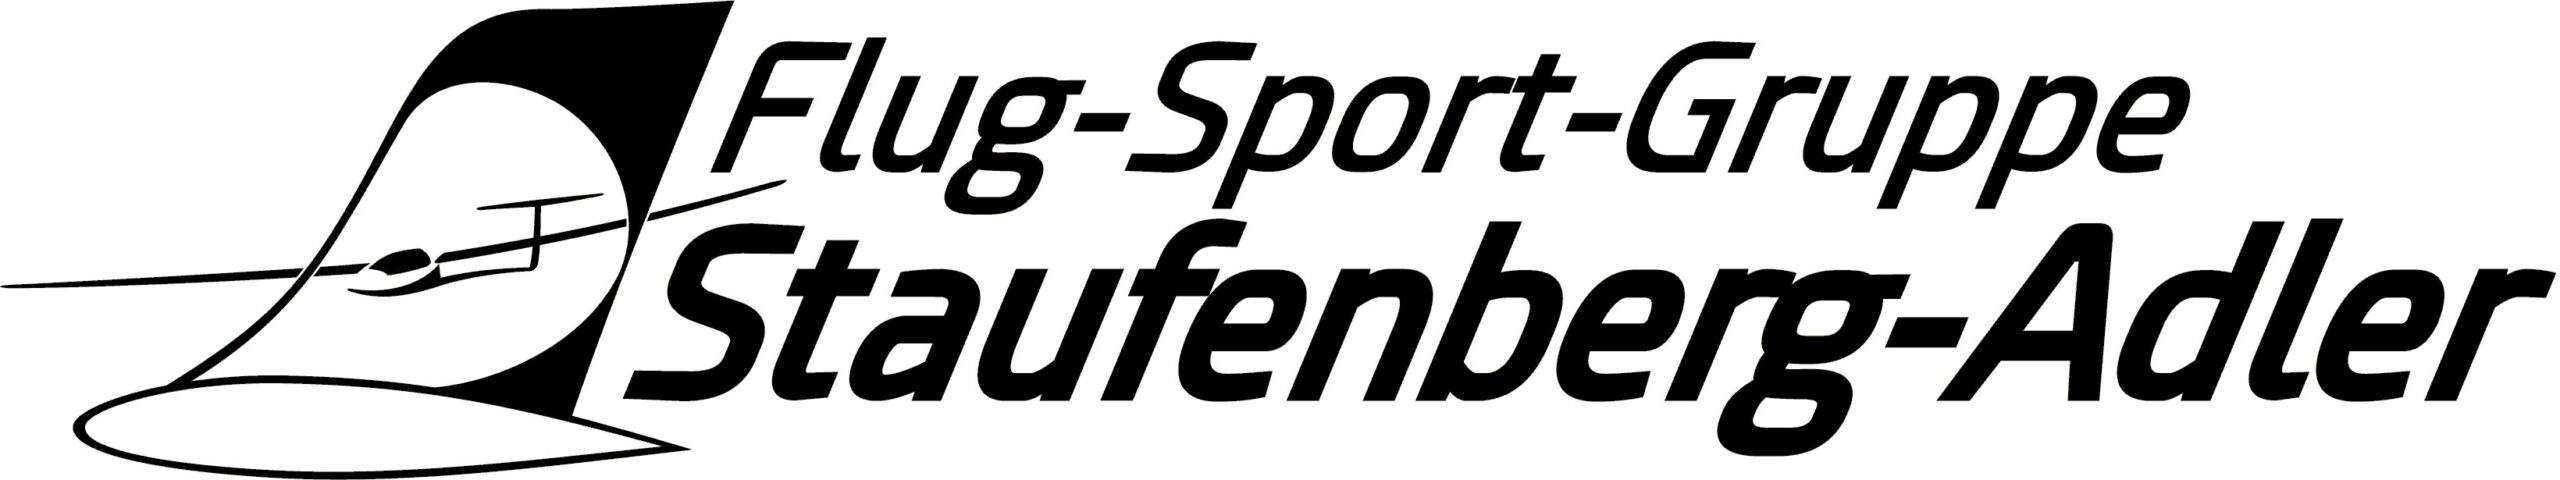 Flug-Sport-Gruppe Staufenberg-Adler e.V